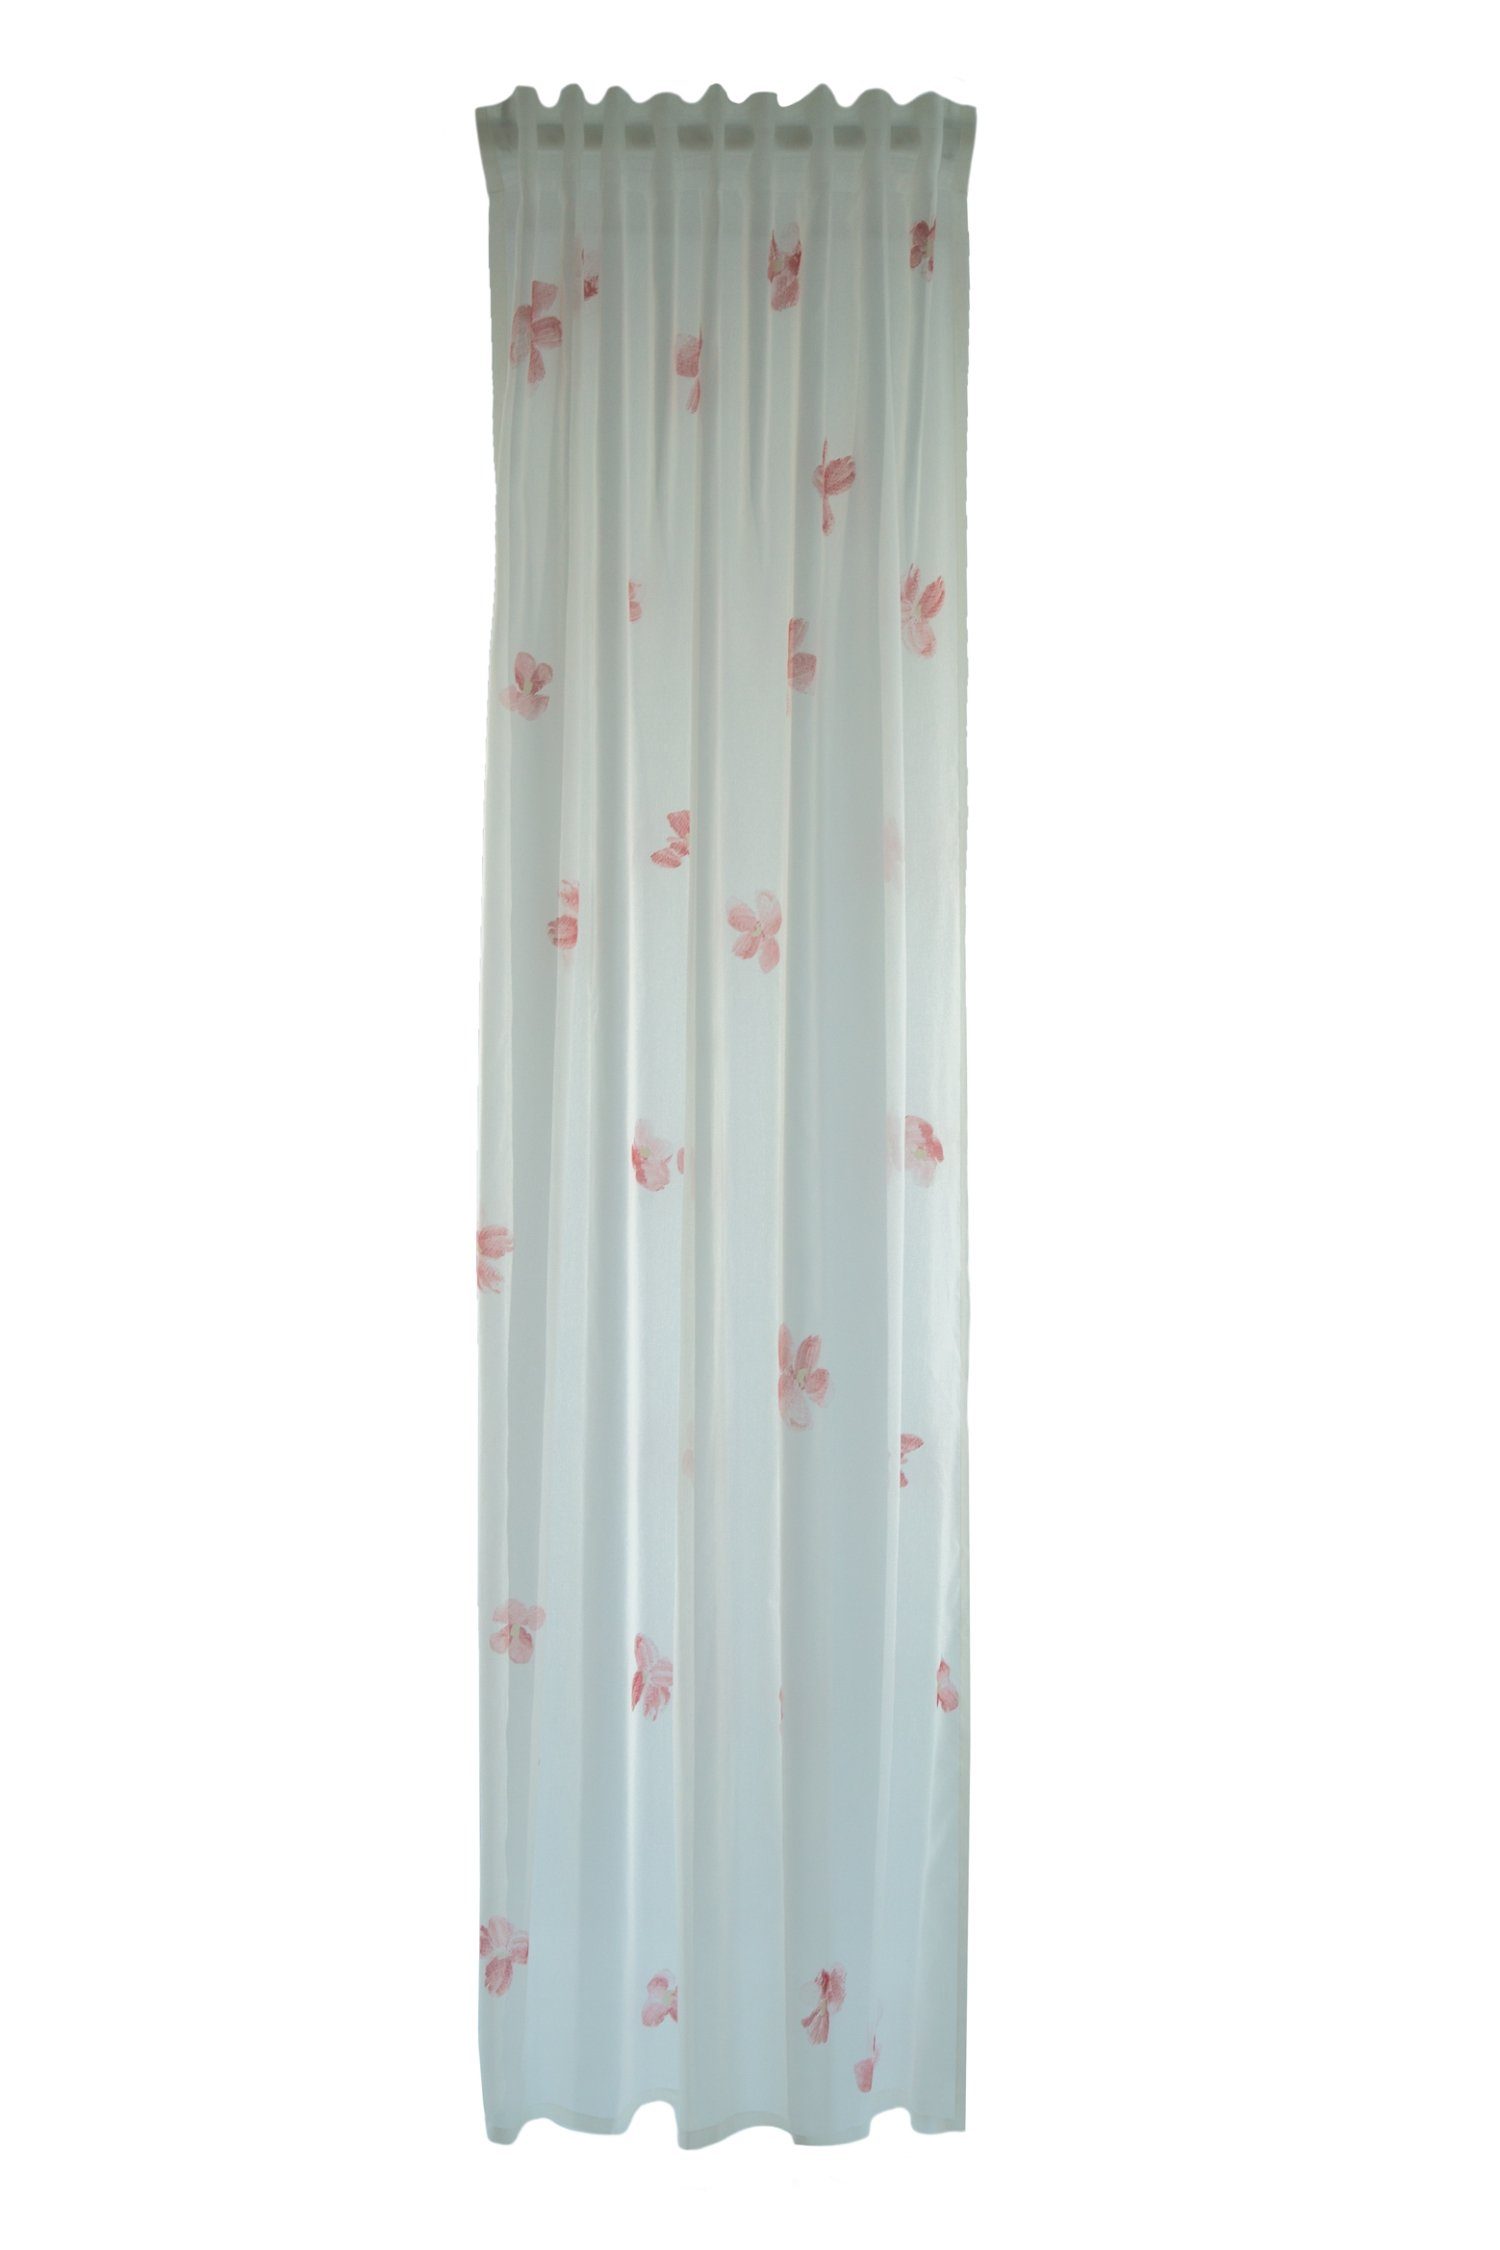 140x245cm Minato Verdeckter HOMING, Farbe: Vorhang, Schlaufenschal weiß-rose